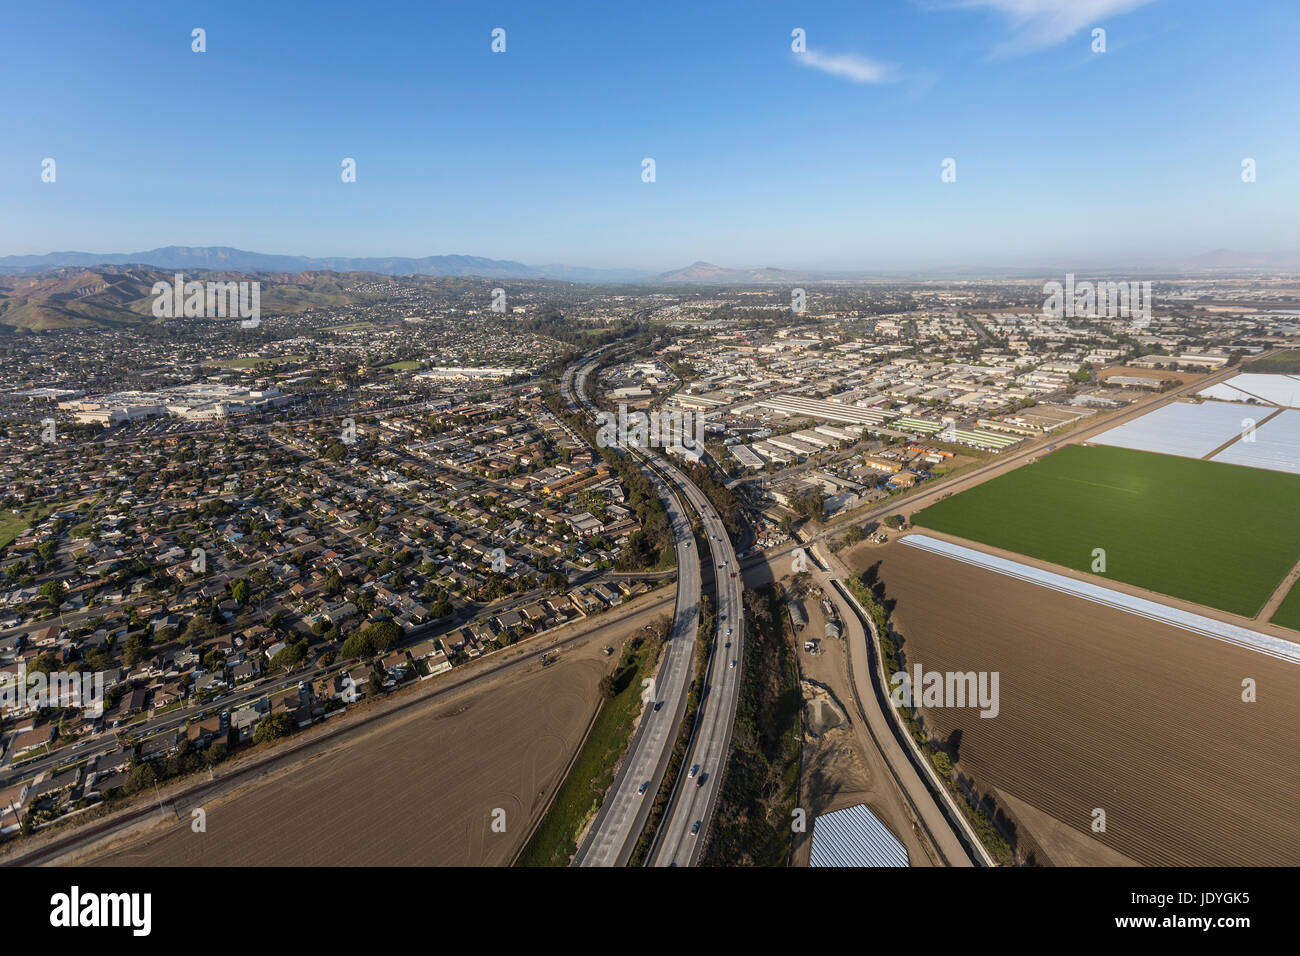 Vue aérienne de l'autoroute 101 dans la région de Ventura, Californie Banque D'Images